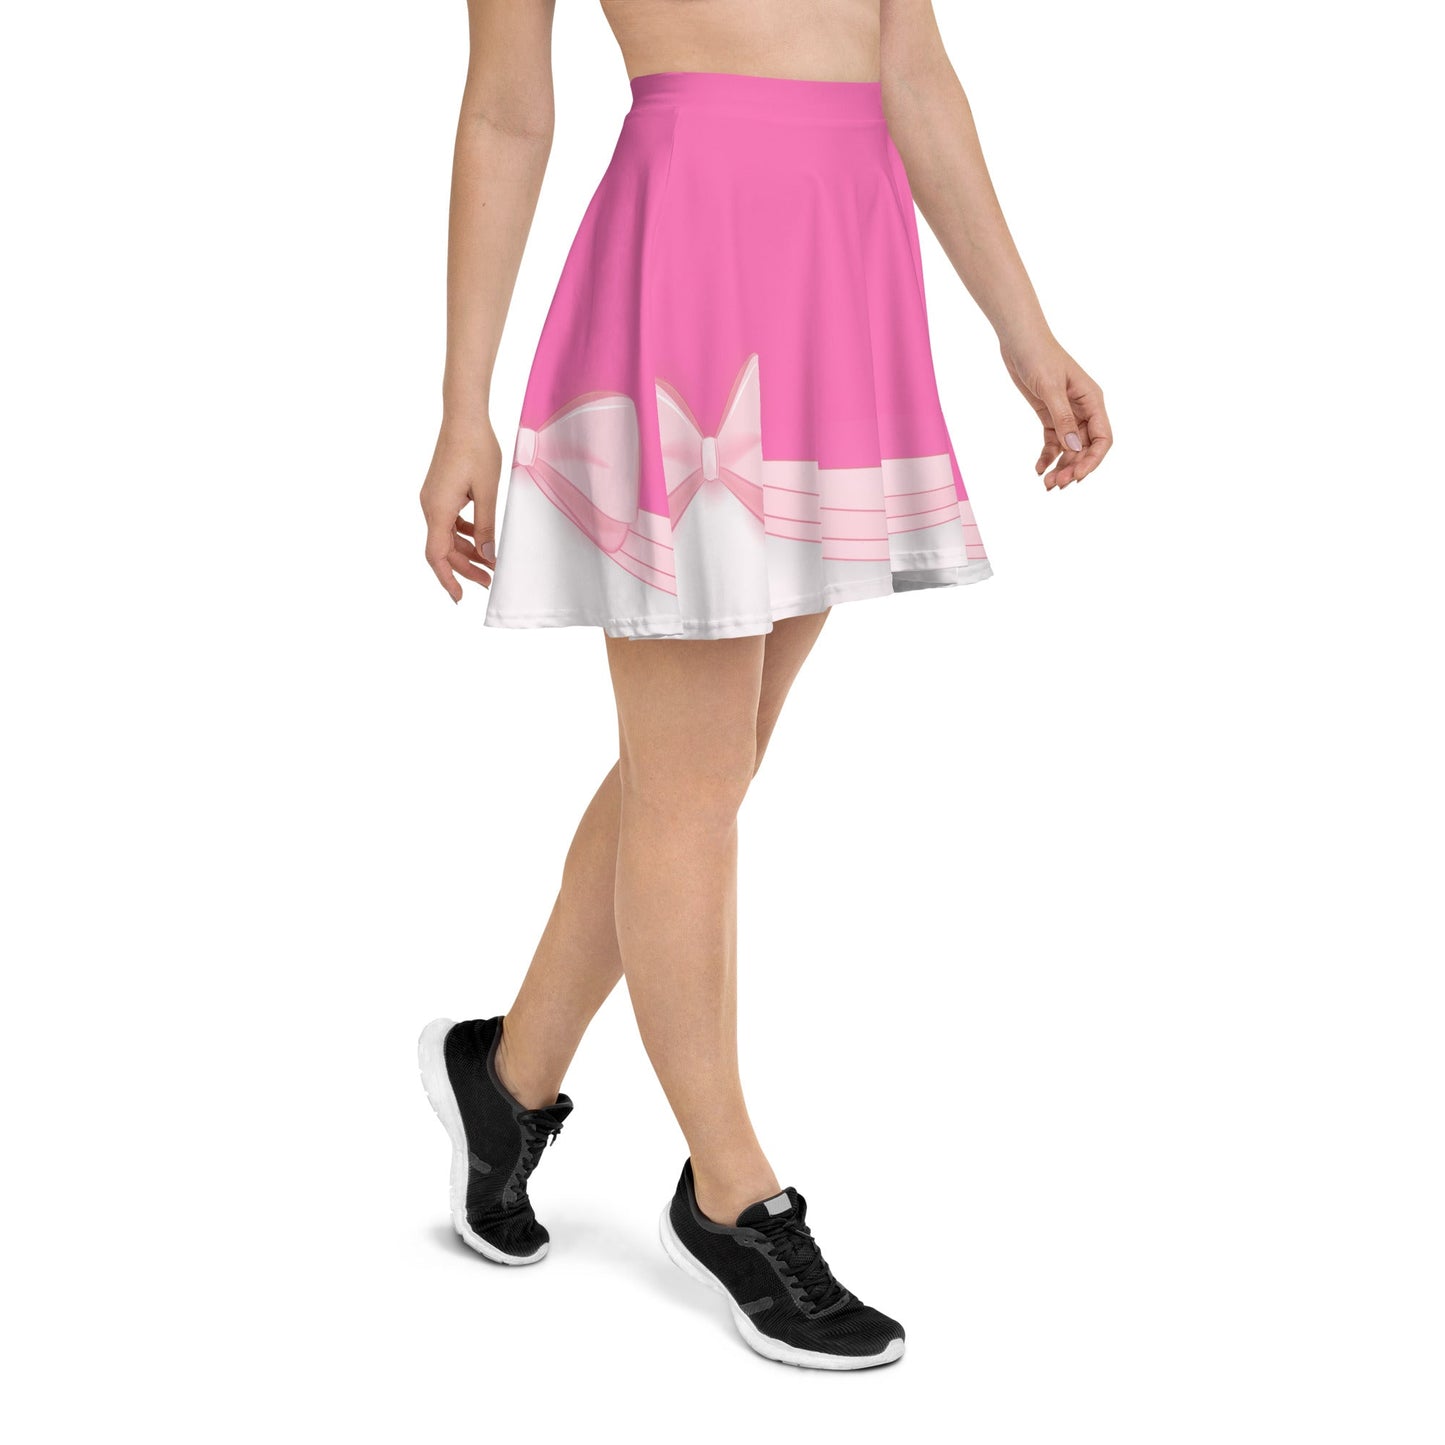 Pink Cindy Skater Skirt adult cinderellaadult cinderella styleSkater DressWrong Lever Clothing